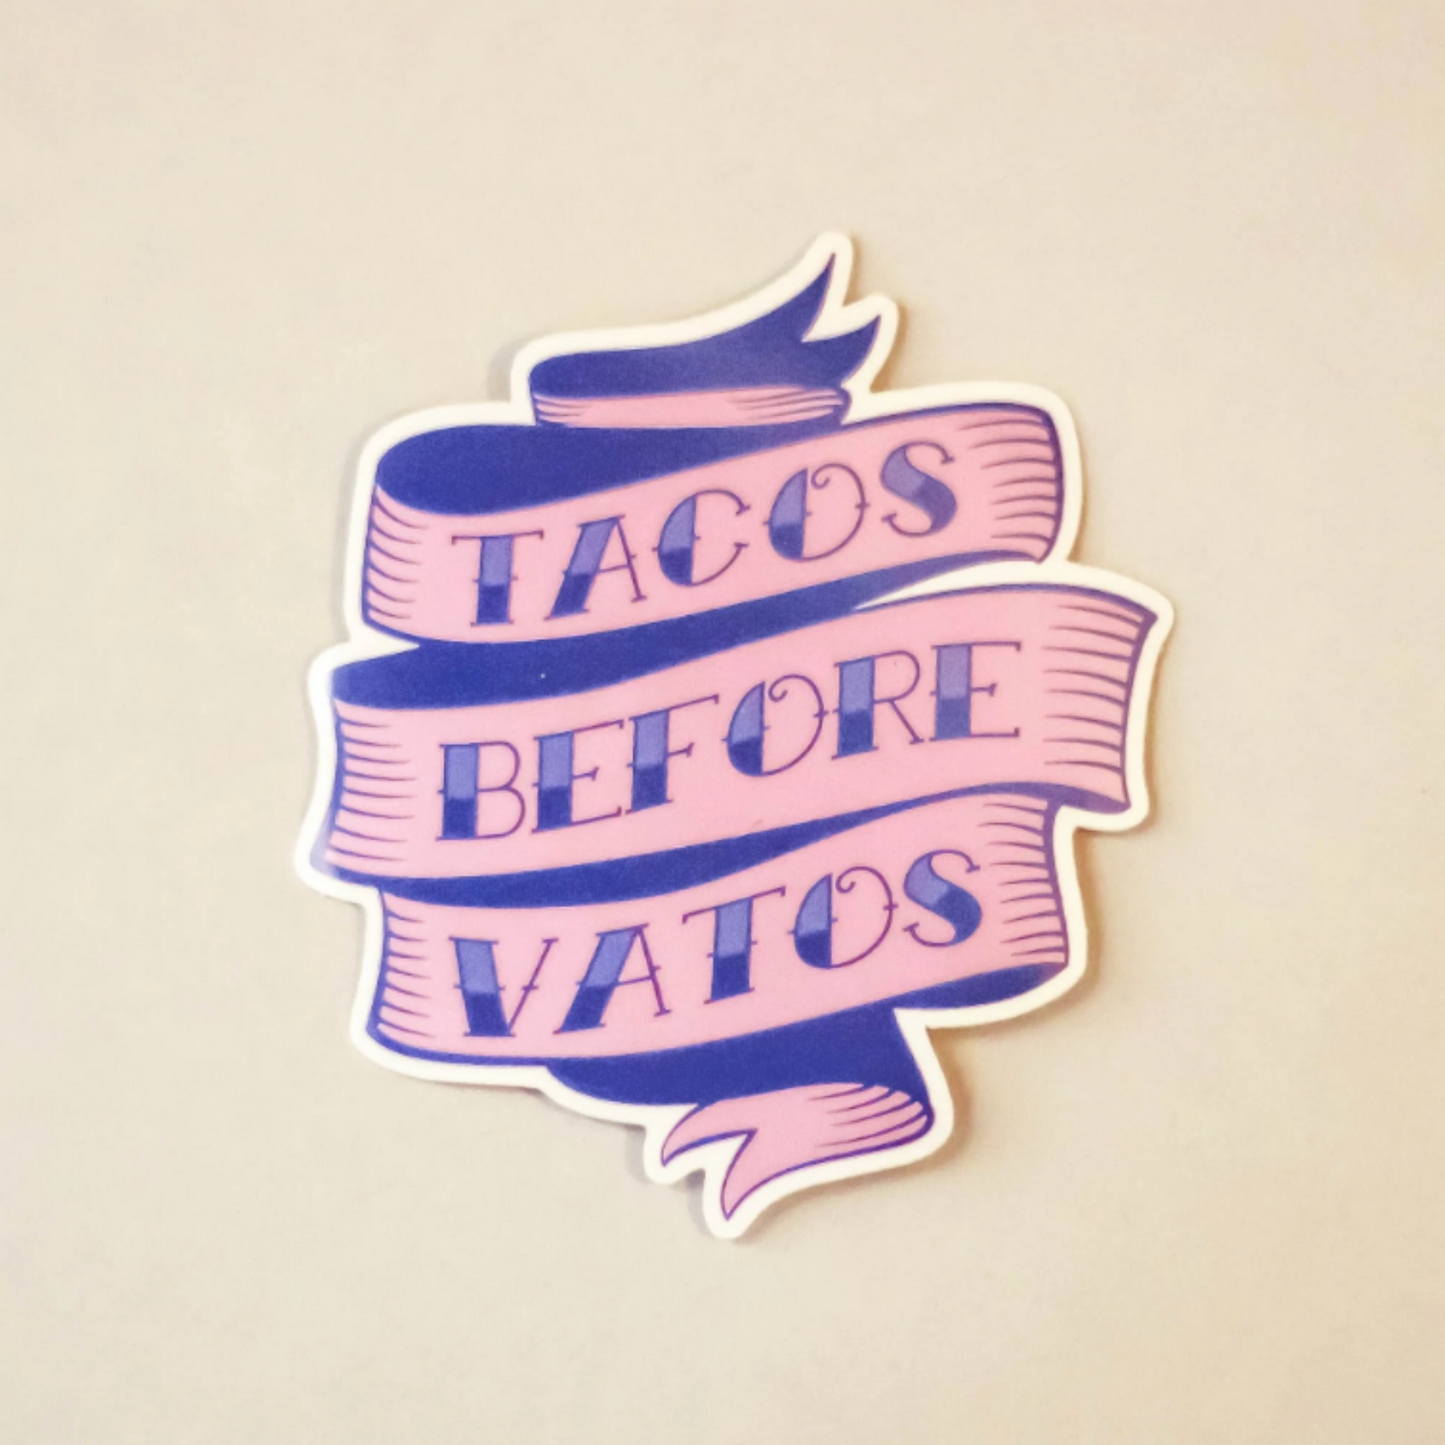 Tacos Before Vatos Sticker